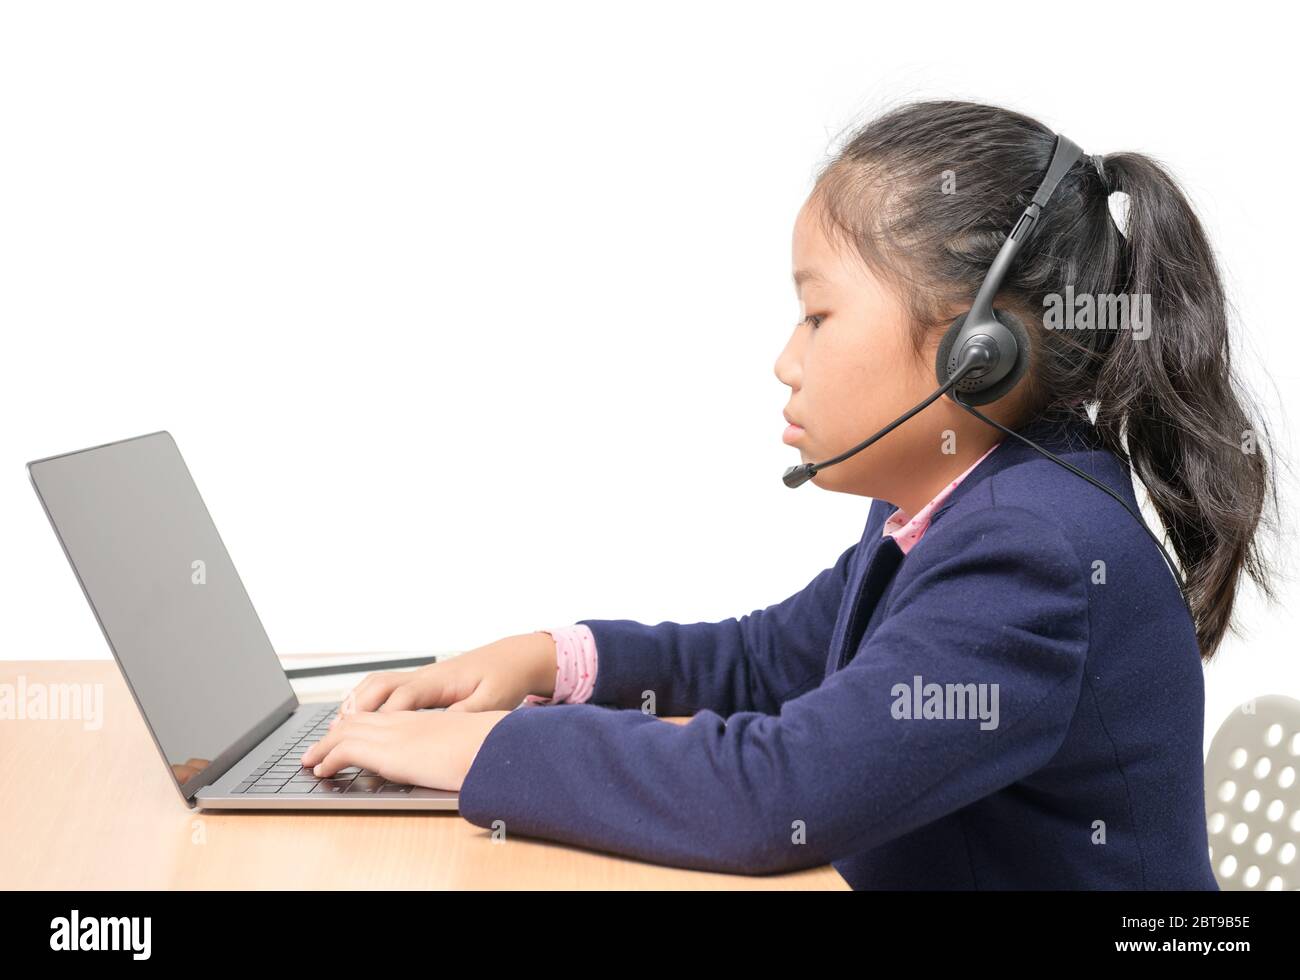 Nette Schüler tragen Kopfhörer und lernen mit Laptop isoliert auf weißem Hintergrund. Ausbruch Des Coronavirus. Sperrung und Schließung von Schulen. Stockfoto